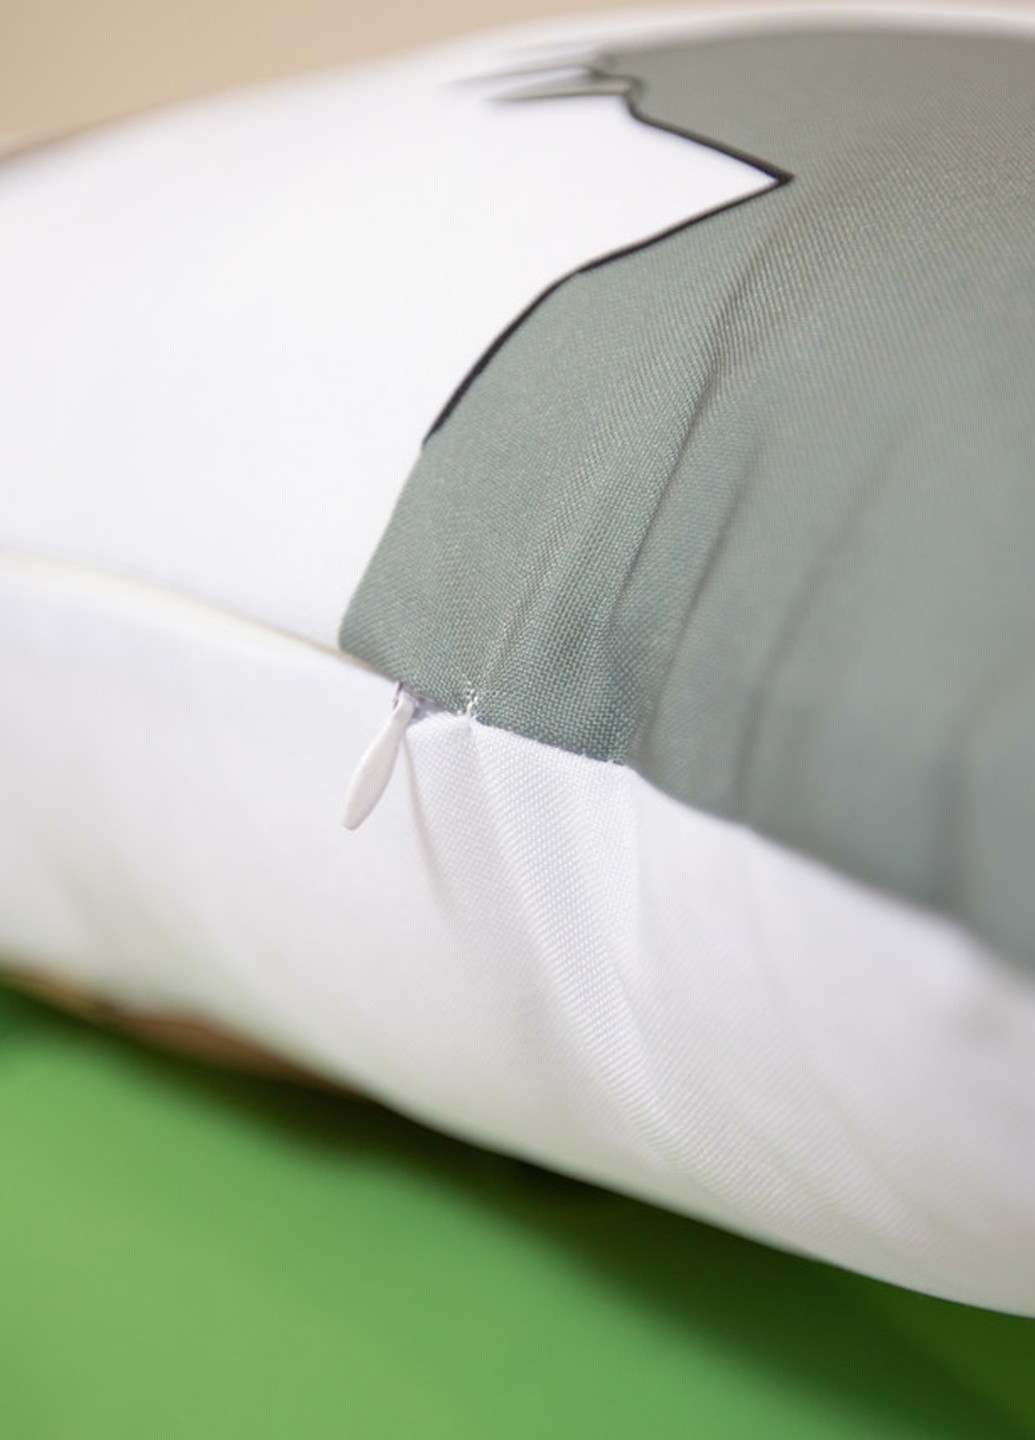 Подушка дакимакура Тору Дракон-горничная госпожи Кобаяши декоративная ростовая подушка для обнимания 50*170_1 No Brand (258989789)